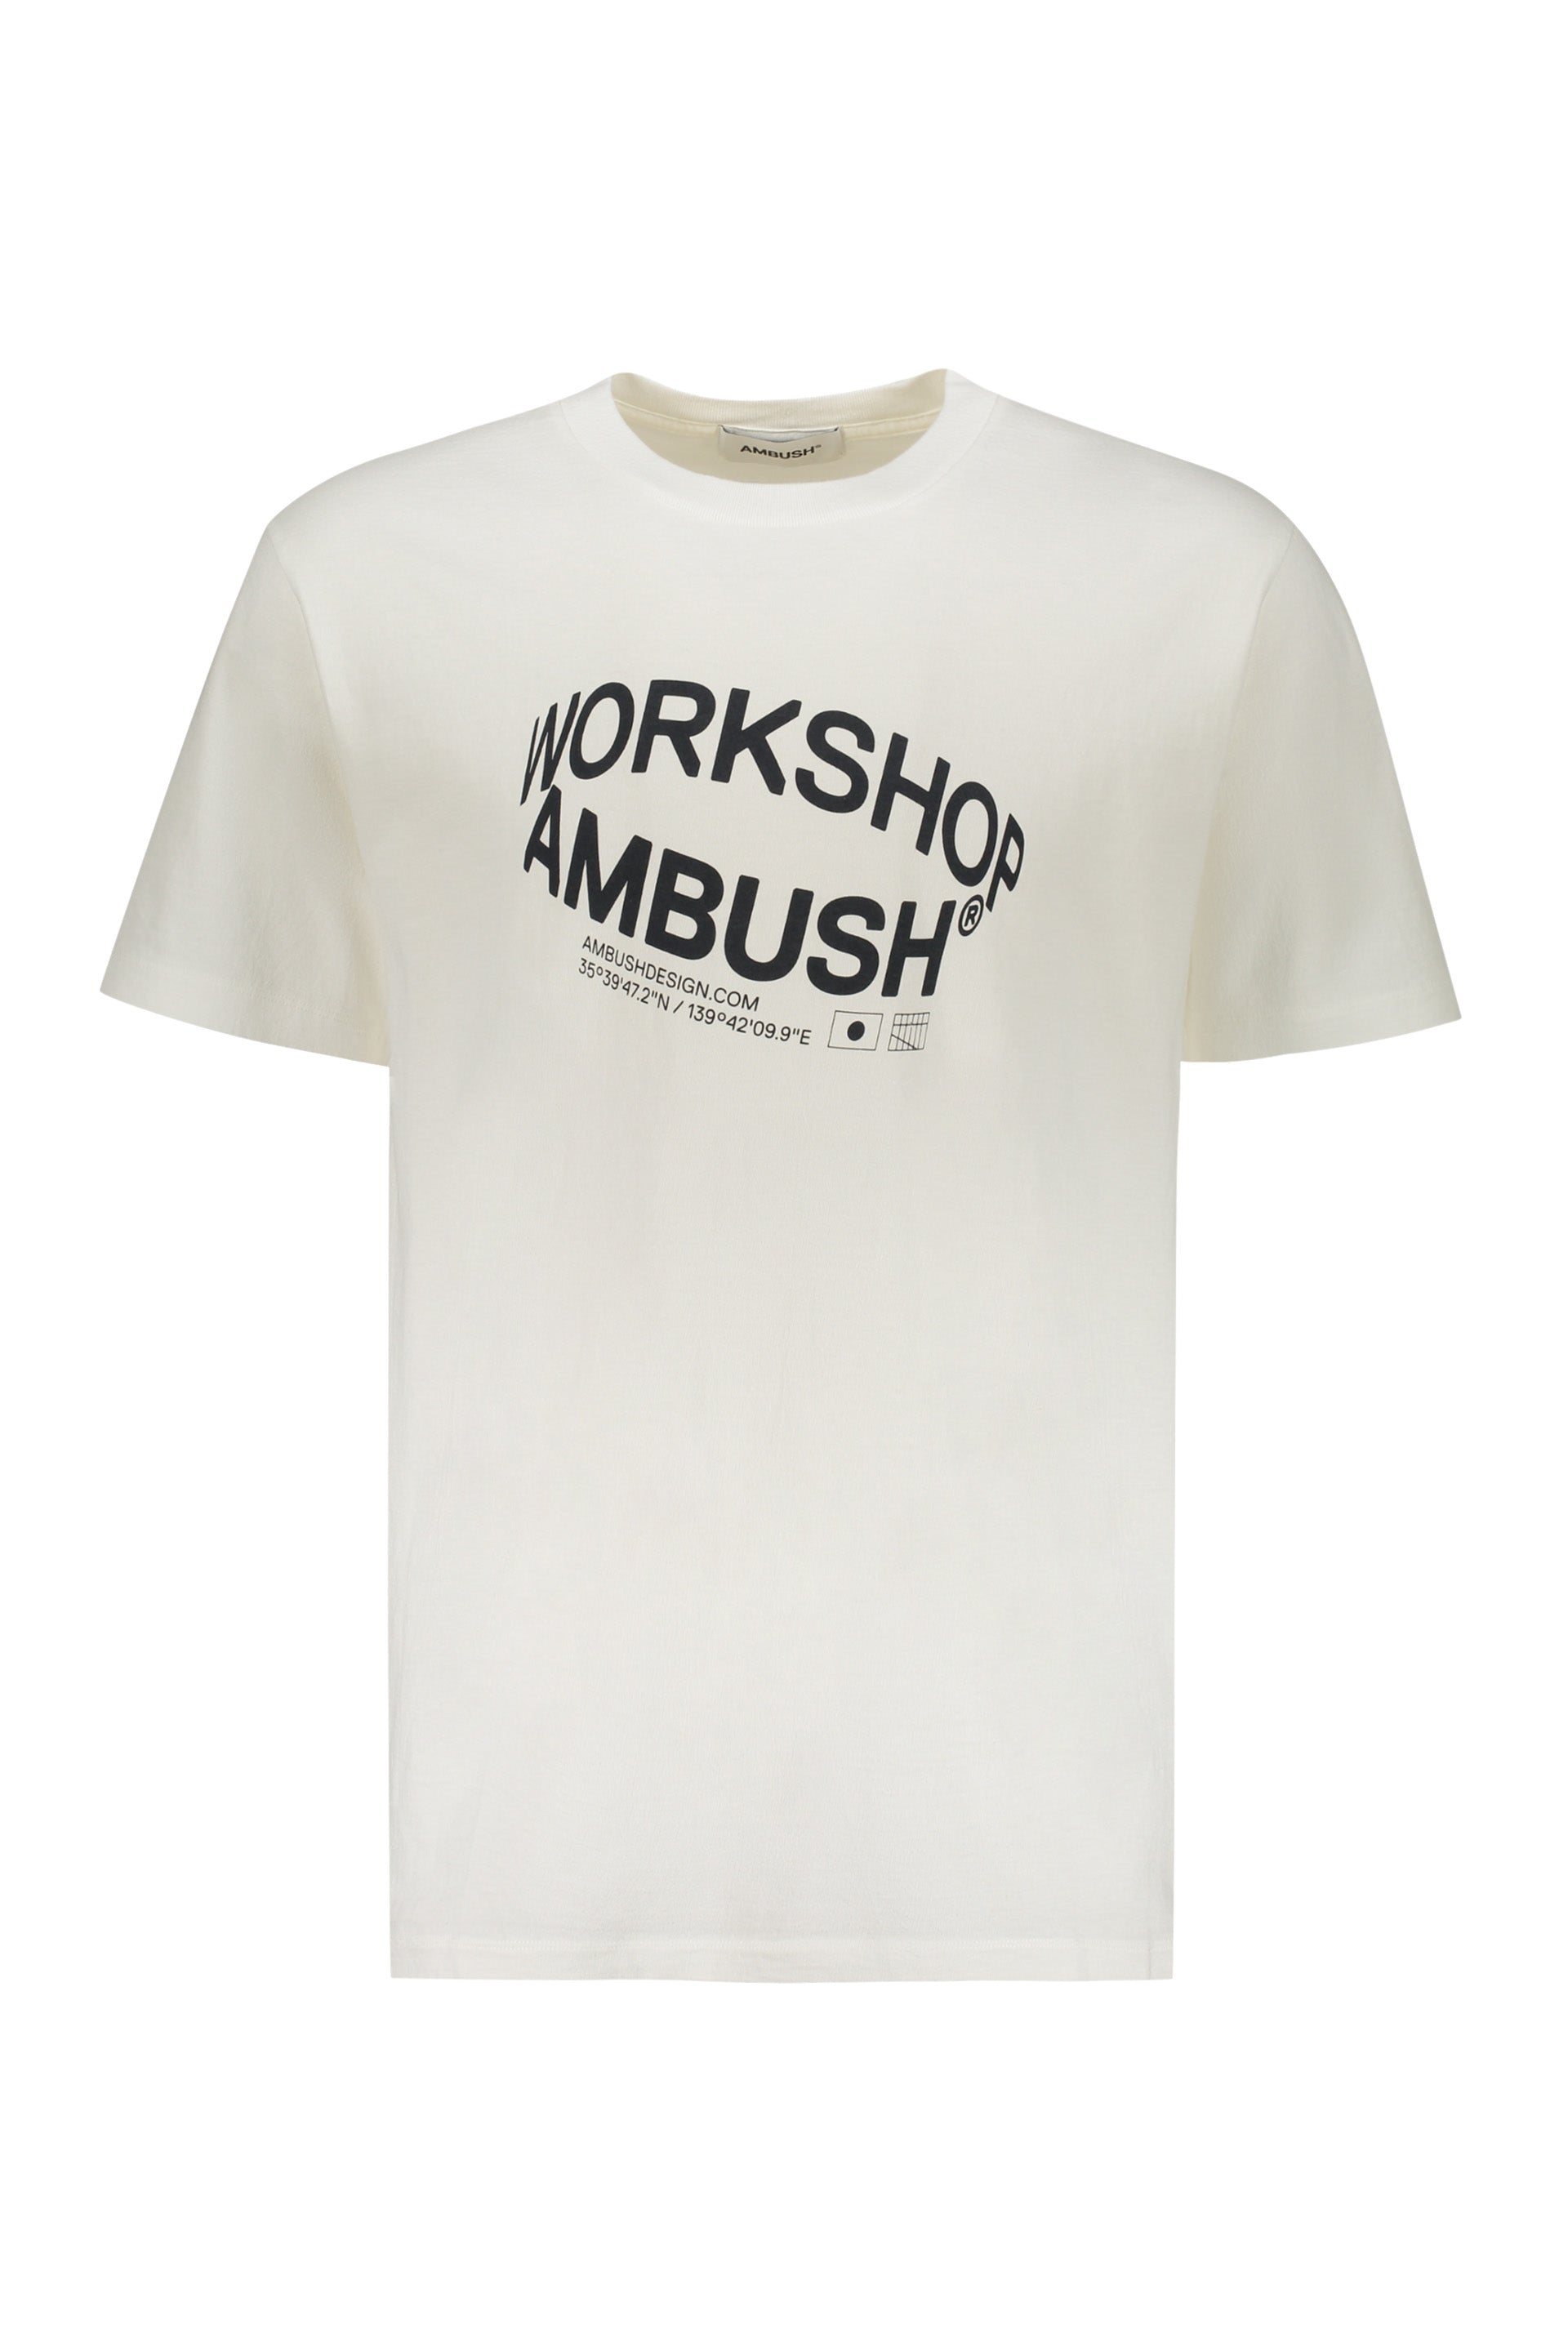 AMBUSH-OUTLET-SALE-Cotton-T-shirt-Shirts-L-ARCHIVE-COLLECTION_5d1faa85-b8da-404f-8884-208679ce0235.jpg